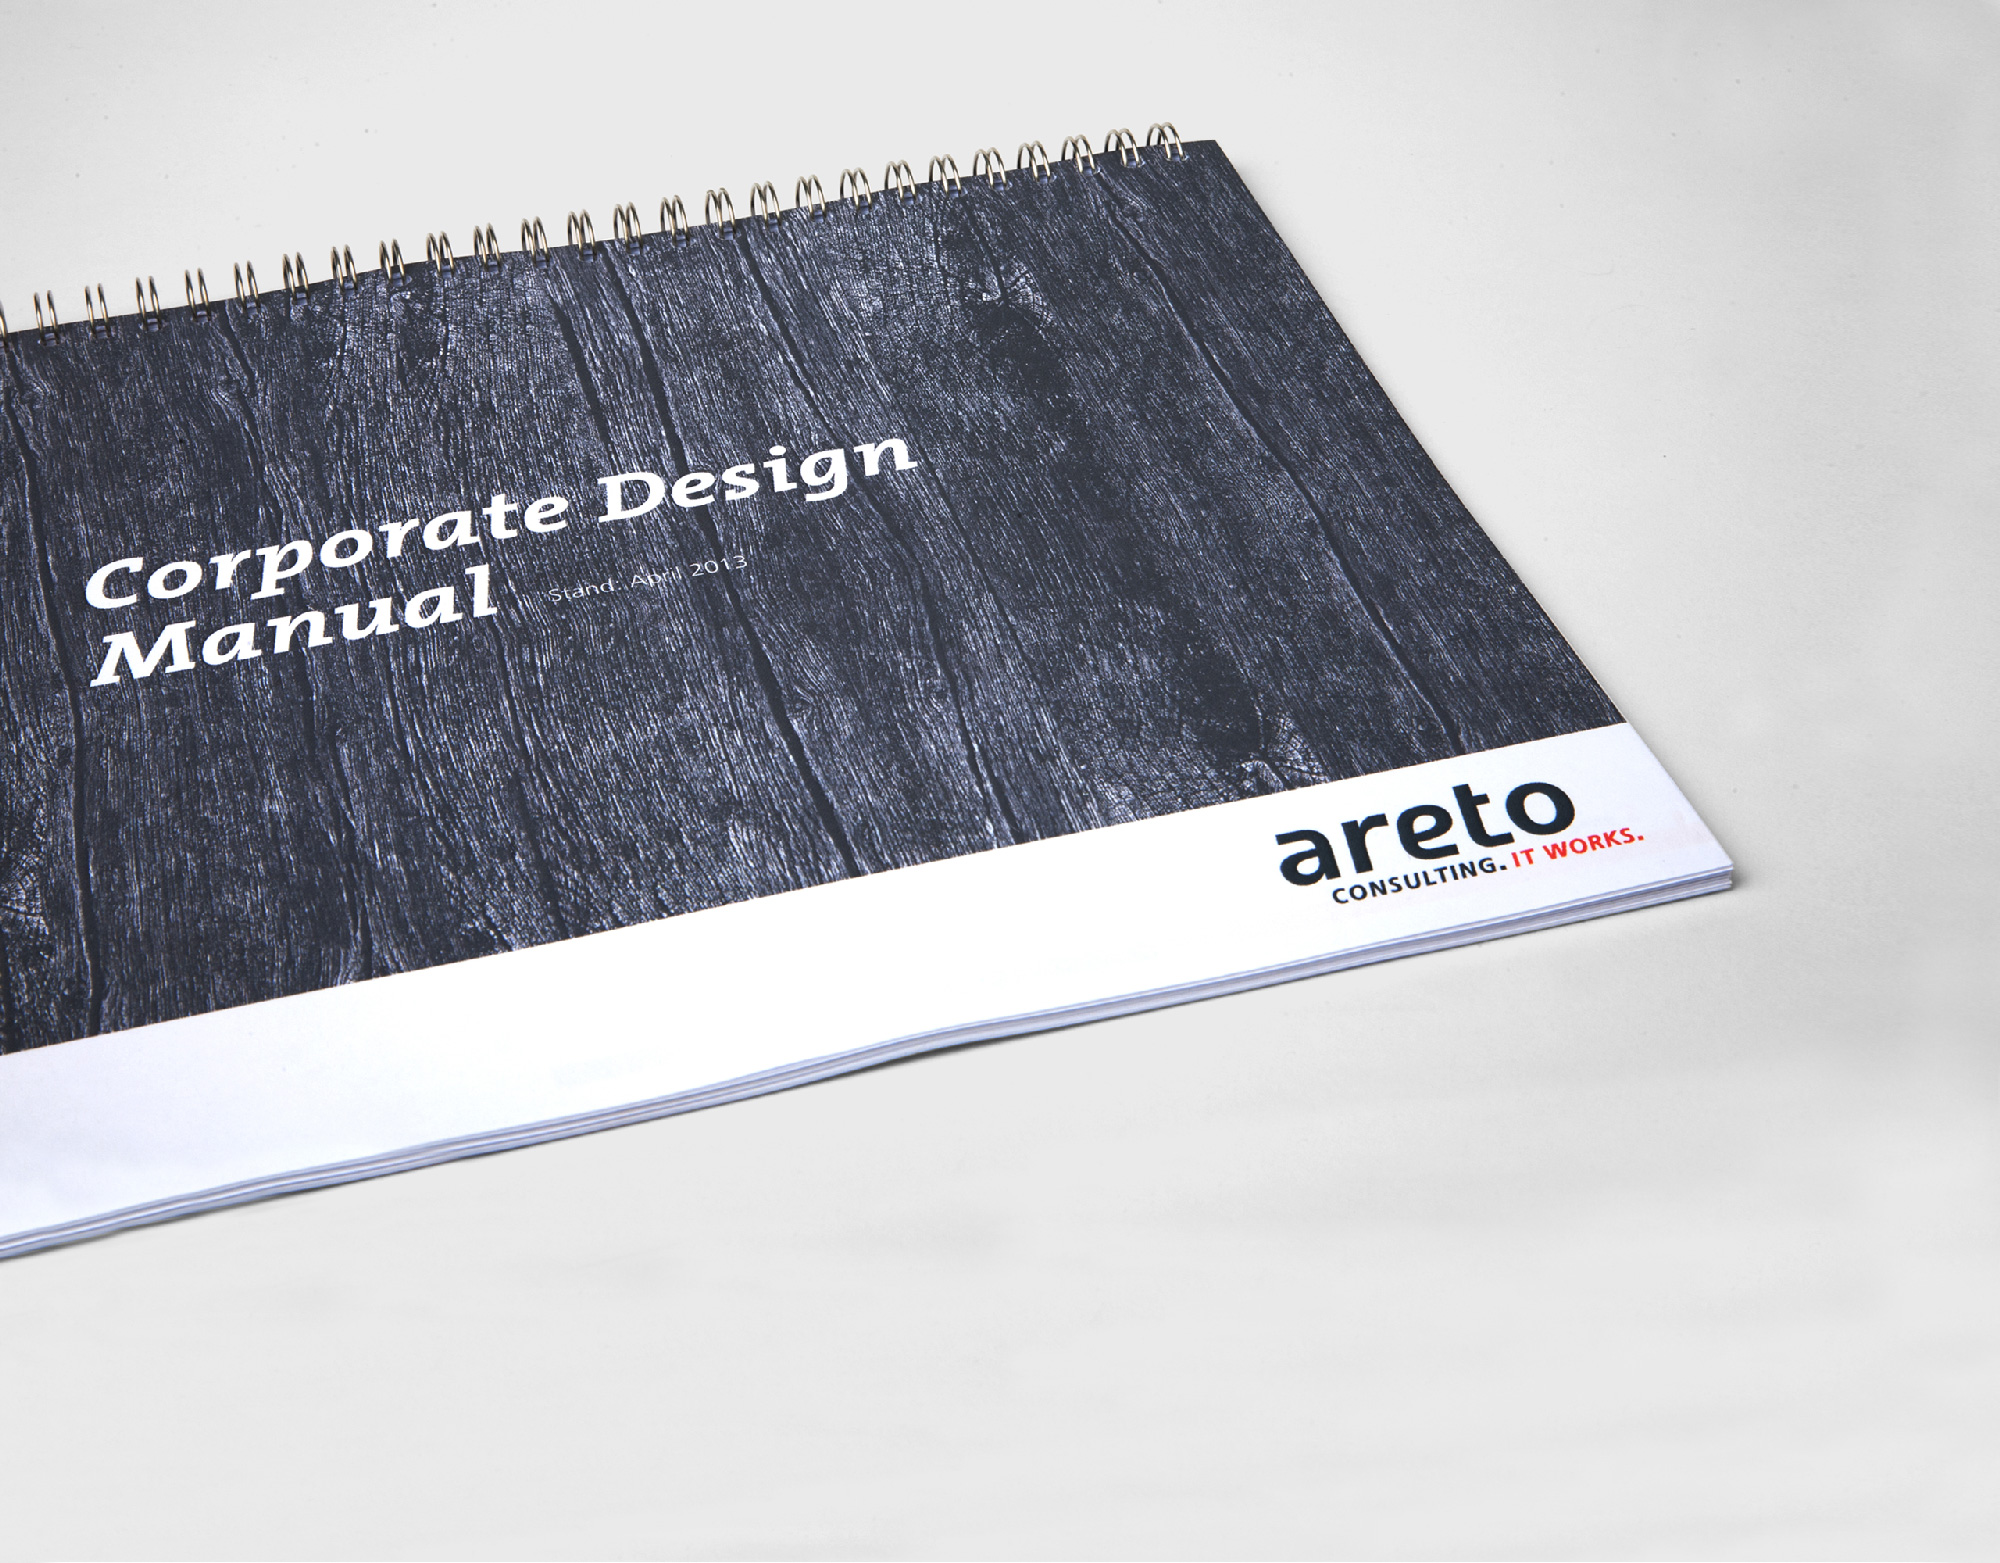 Corporatedesign-01